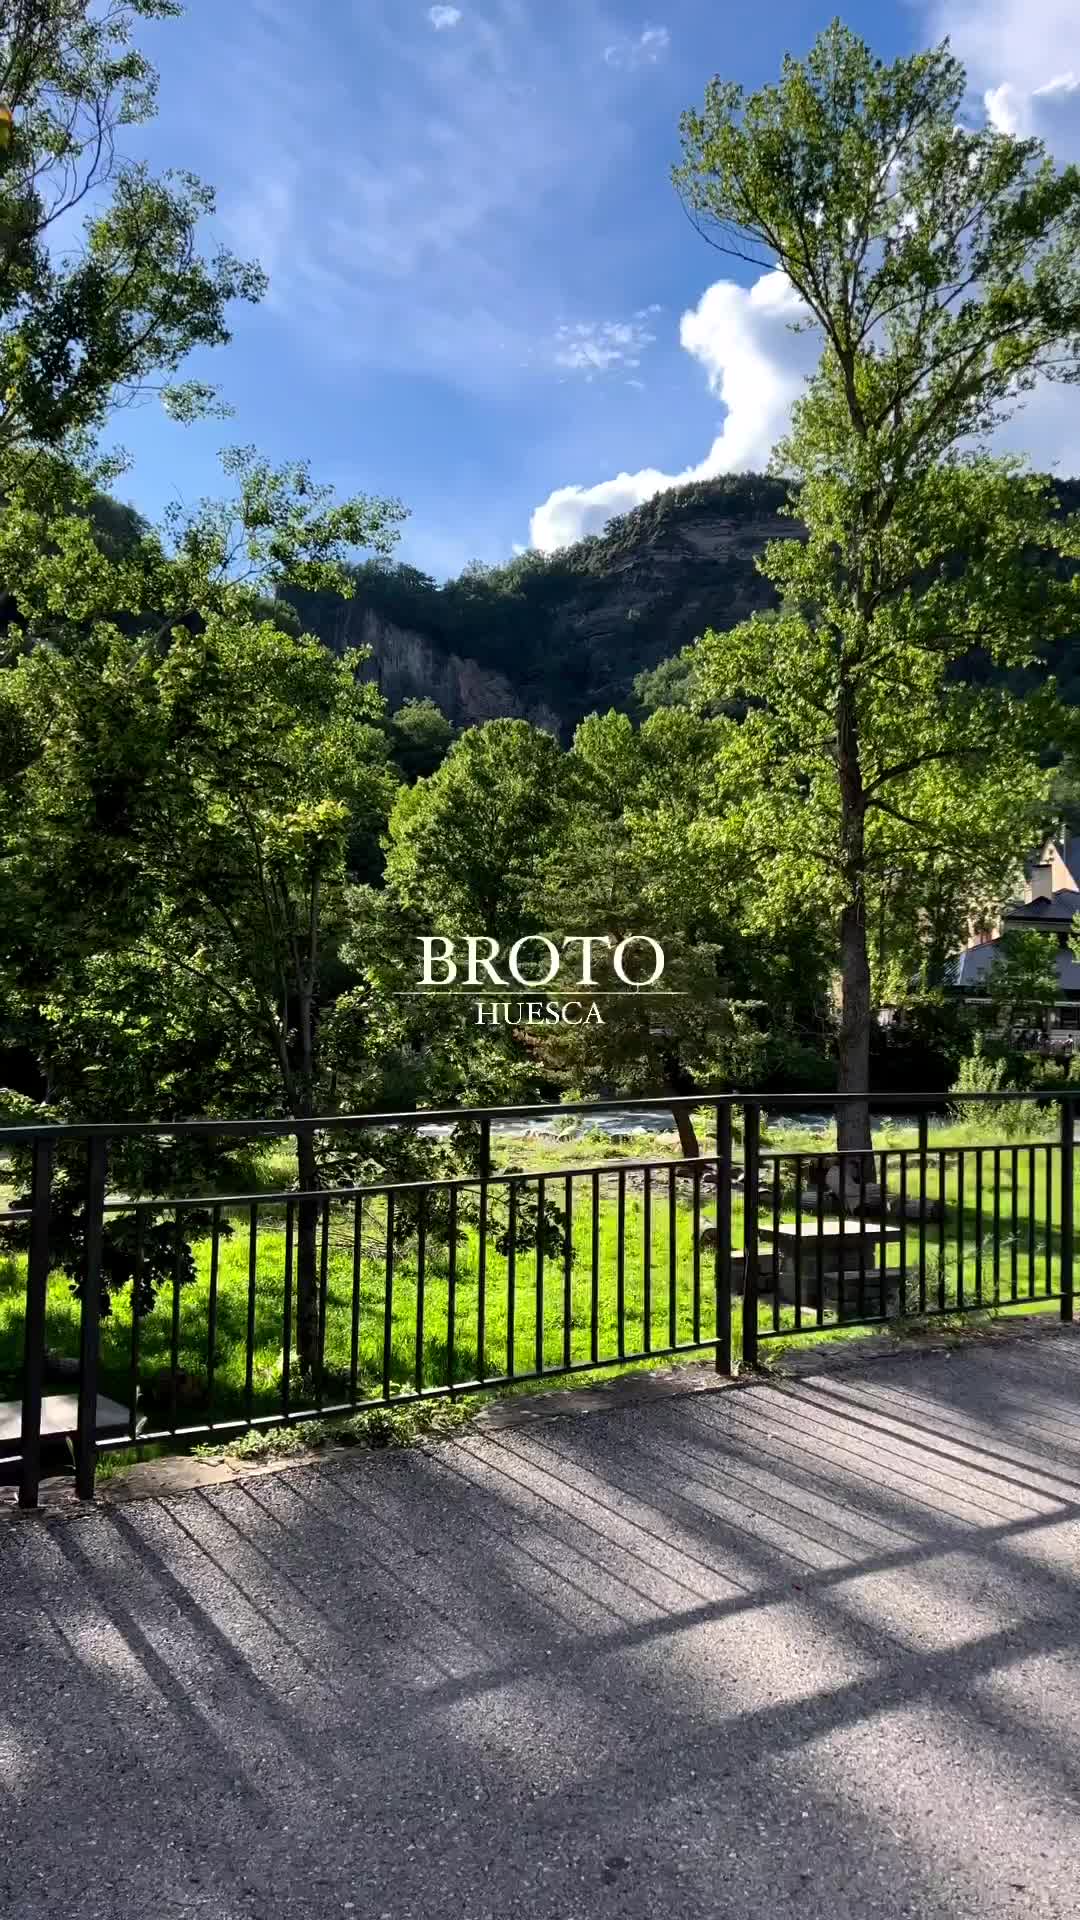 Discover Broto: Gateway to Ordesa & Monte Perdido